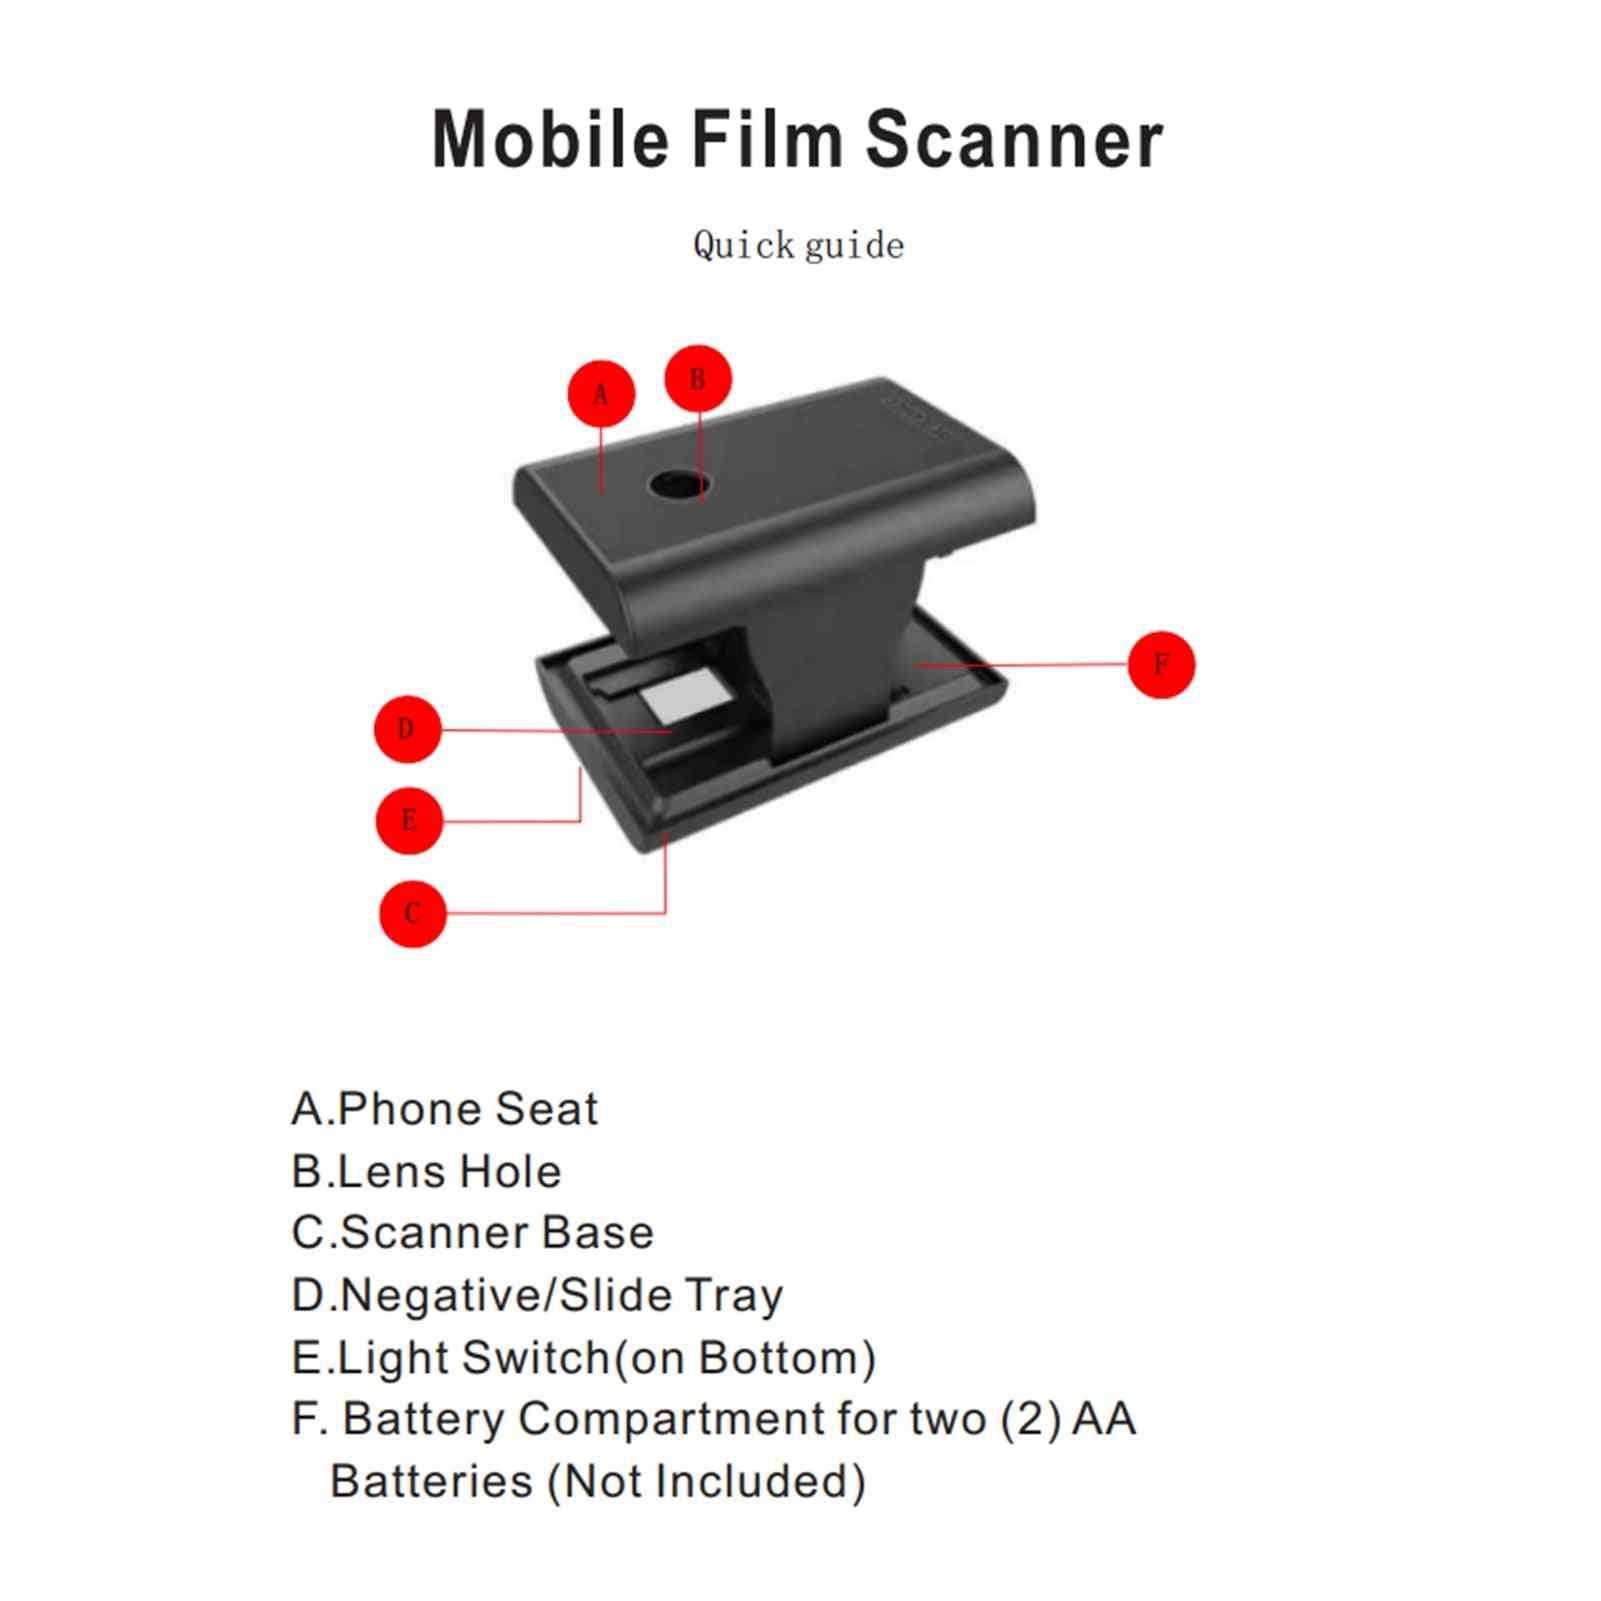 Negatives Slides Film Scanner Smartphone Camera Play